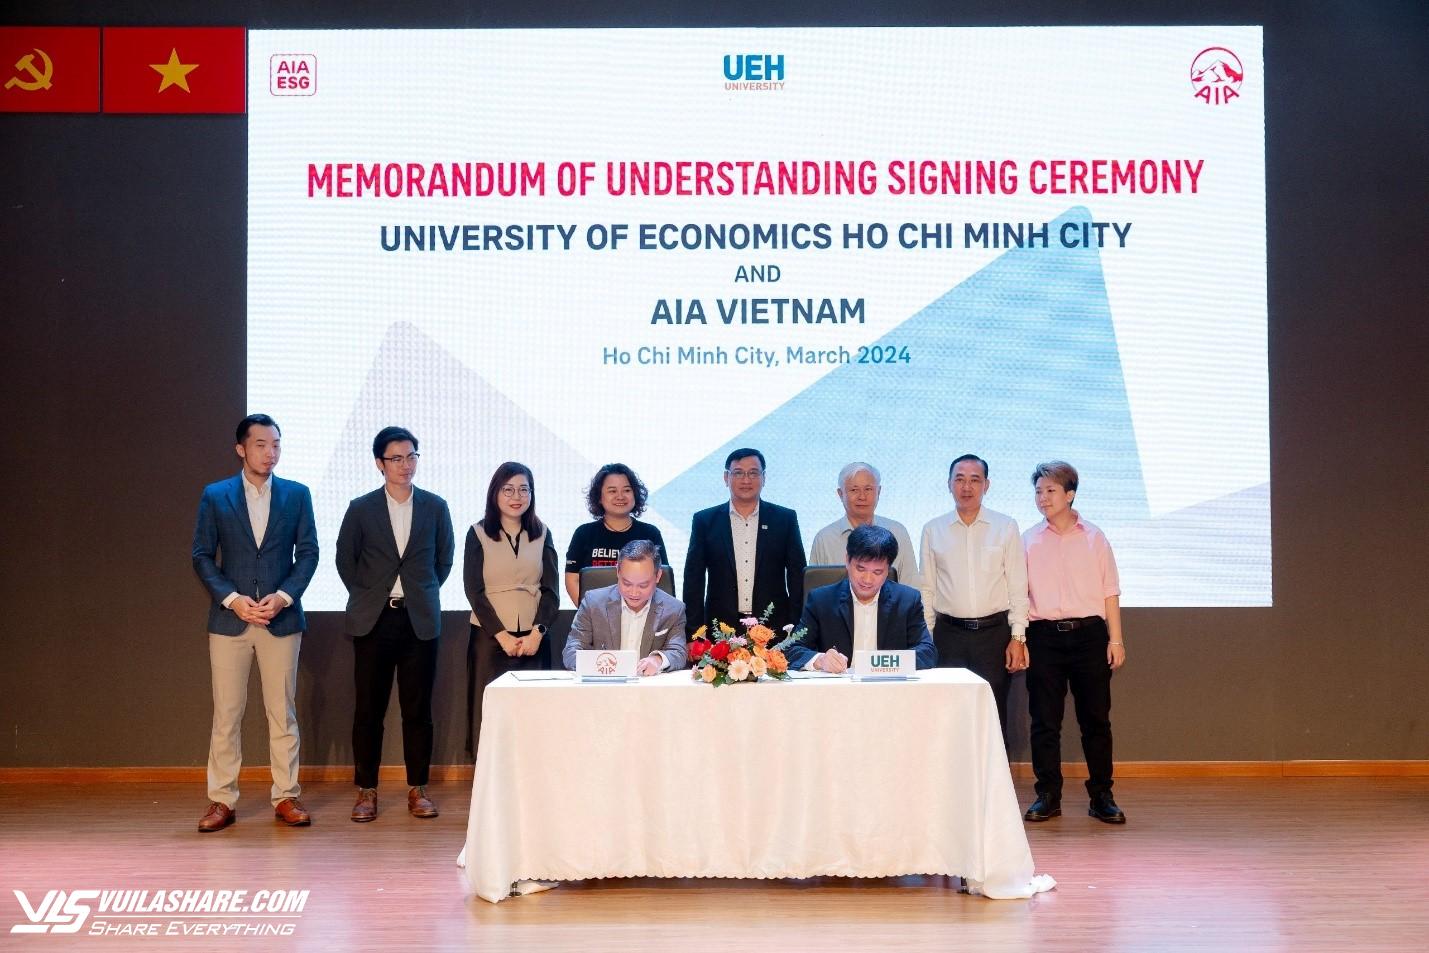 Ông Lê Thành Nam, Phó Tổng Giám đốc Tài chính AIA Việt Nam và PGS.TS. Bùi Quang Hùng - Phó Giám đốc UEH ký kết hợp tác chiến lược đến năm 2027